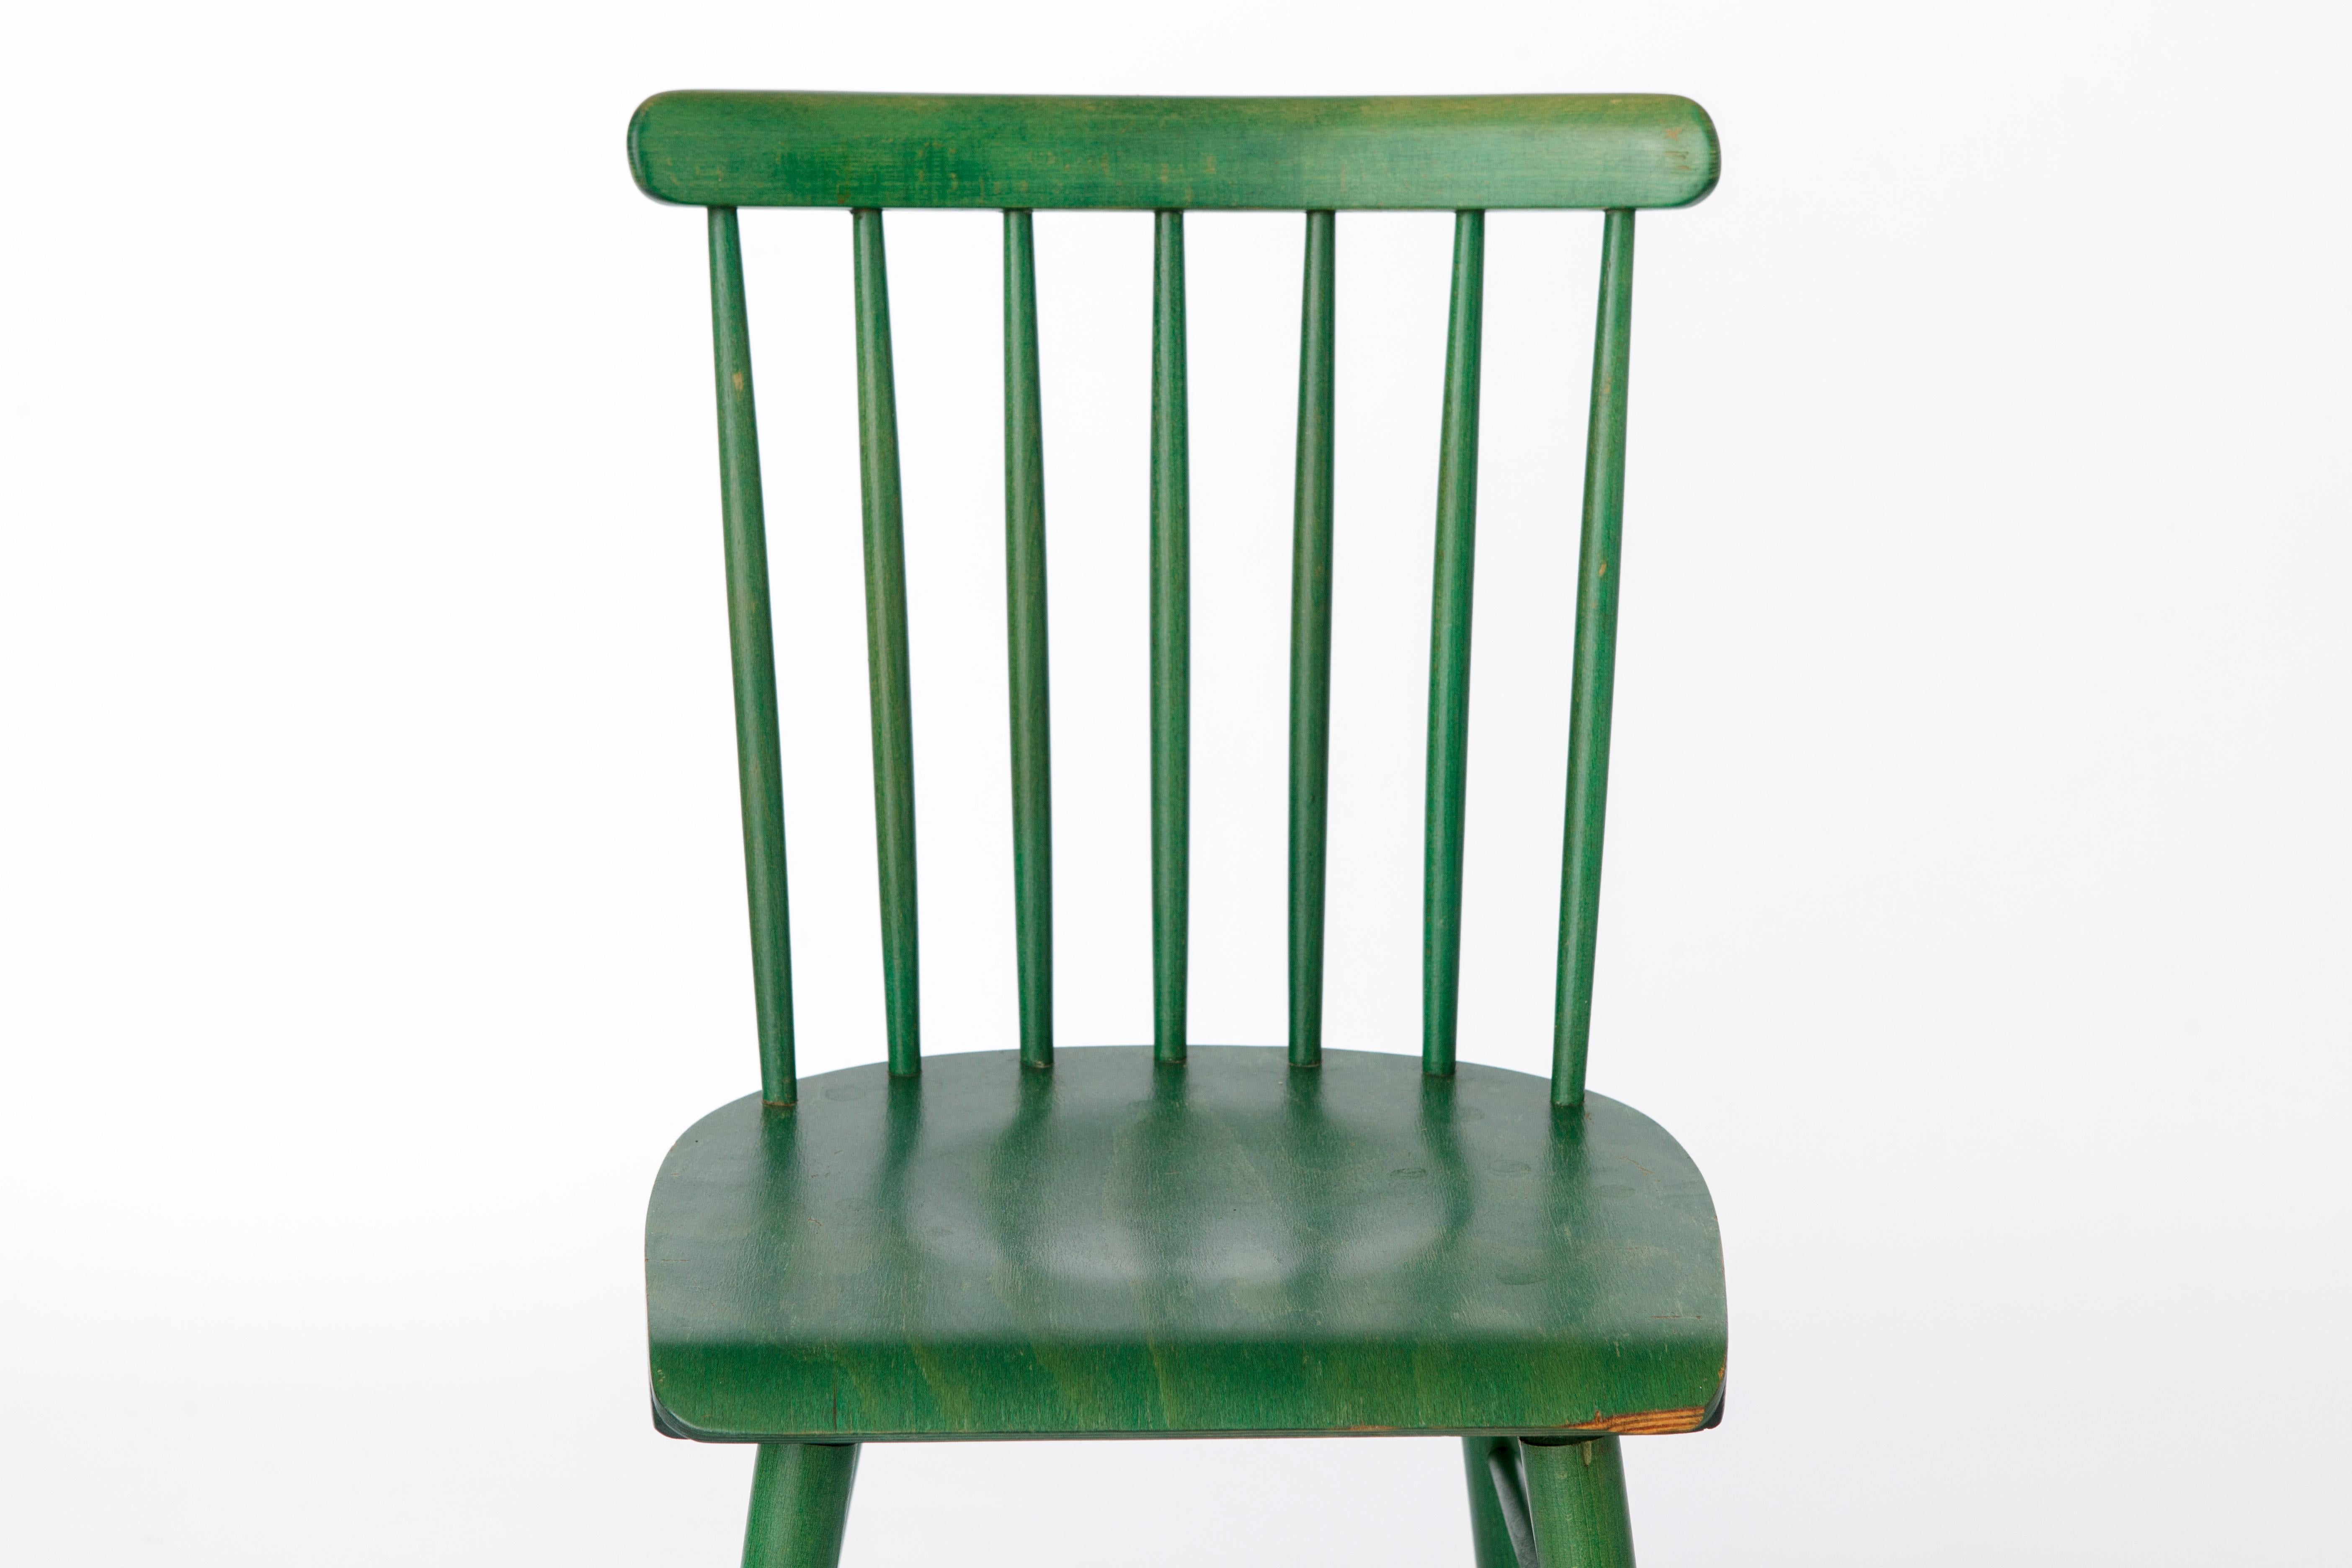 Vintage-Stuhl aus Holz, markiert DDR. 
Produktionszeitraum ca. 1960er-1970er Jahre. 

Stabiler Buchenholzrahmen, grün lackiert. (Originalfarbe)
Bitte beachten Sie die größere Kerbe vor dem Sitz. Siehe Bilder. 
Ansonsten sehr guter Zustand. 